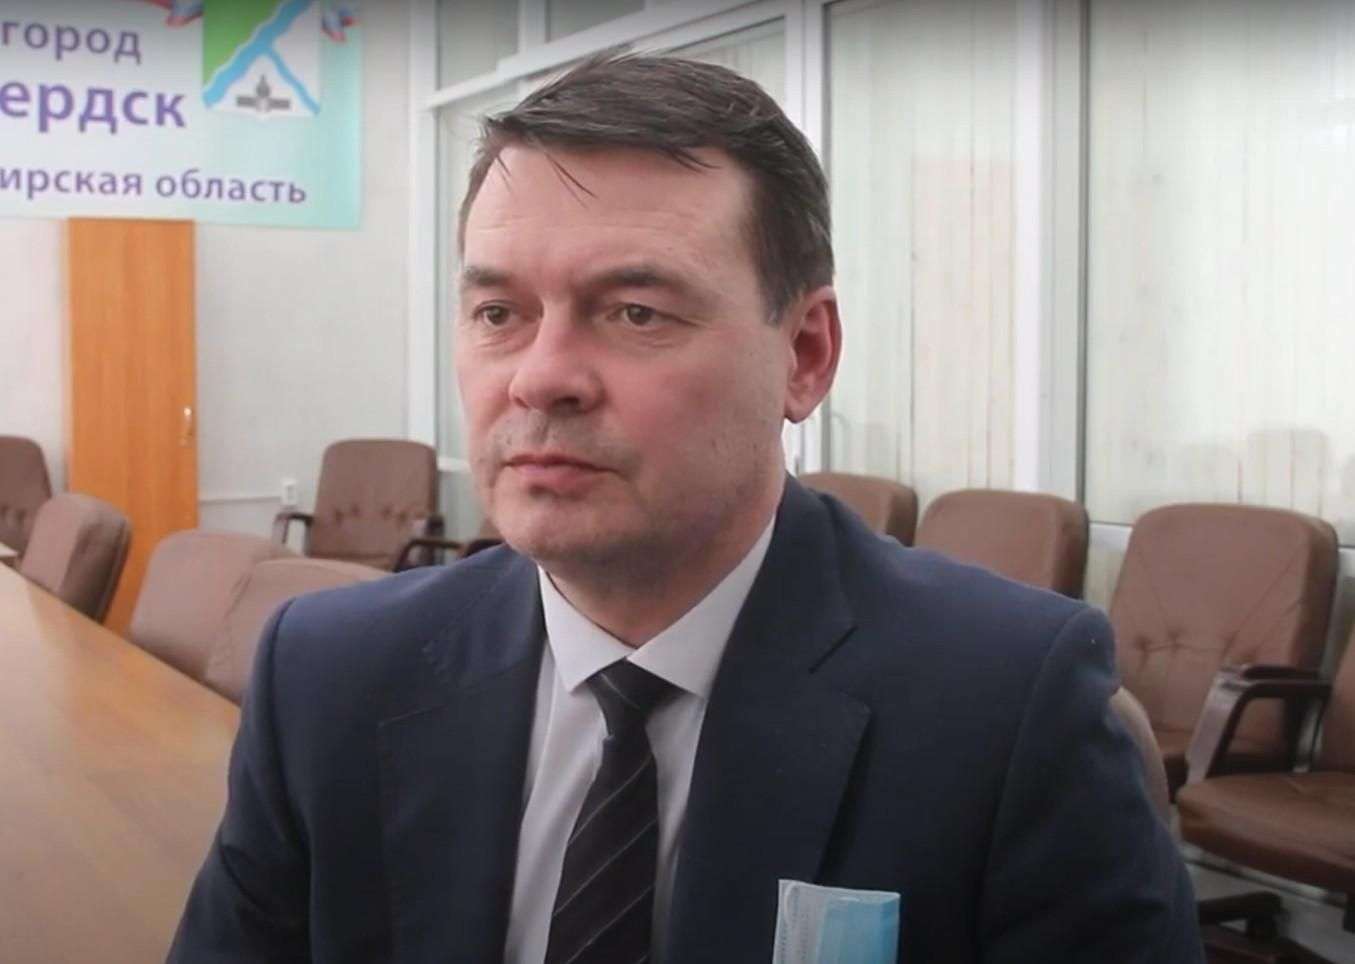 Вице-мэр Бердска Захаров: не хватает техники для очистки улиц от снега, следующей зимой будет легче